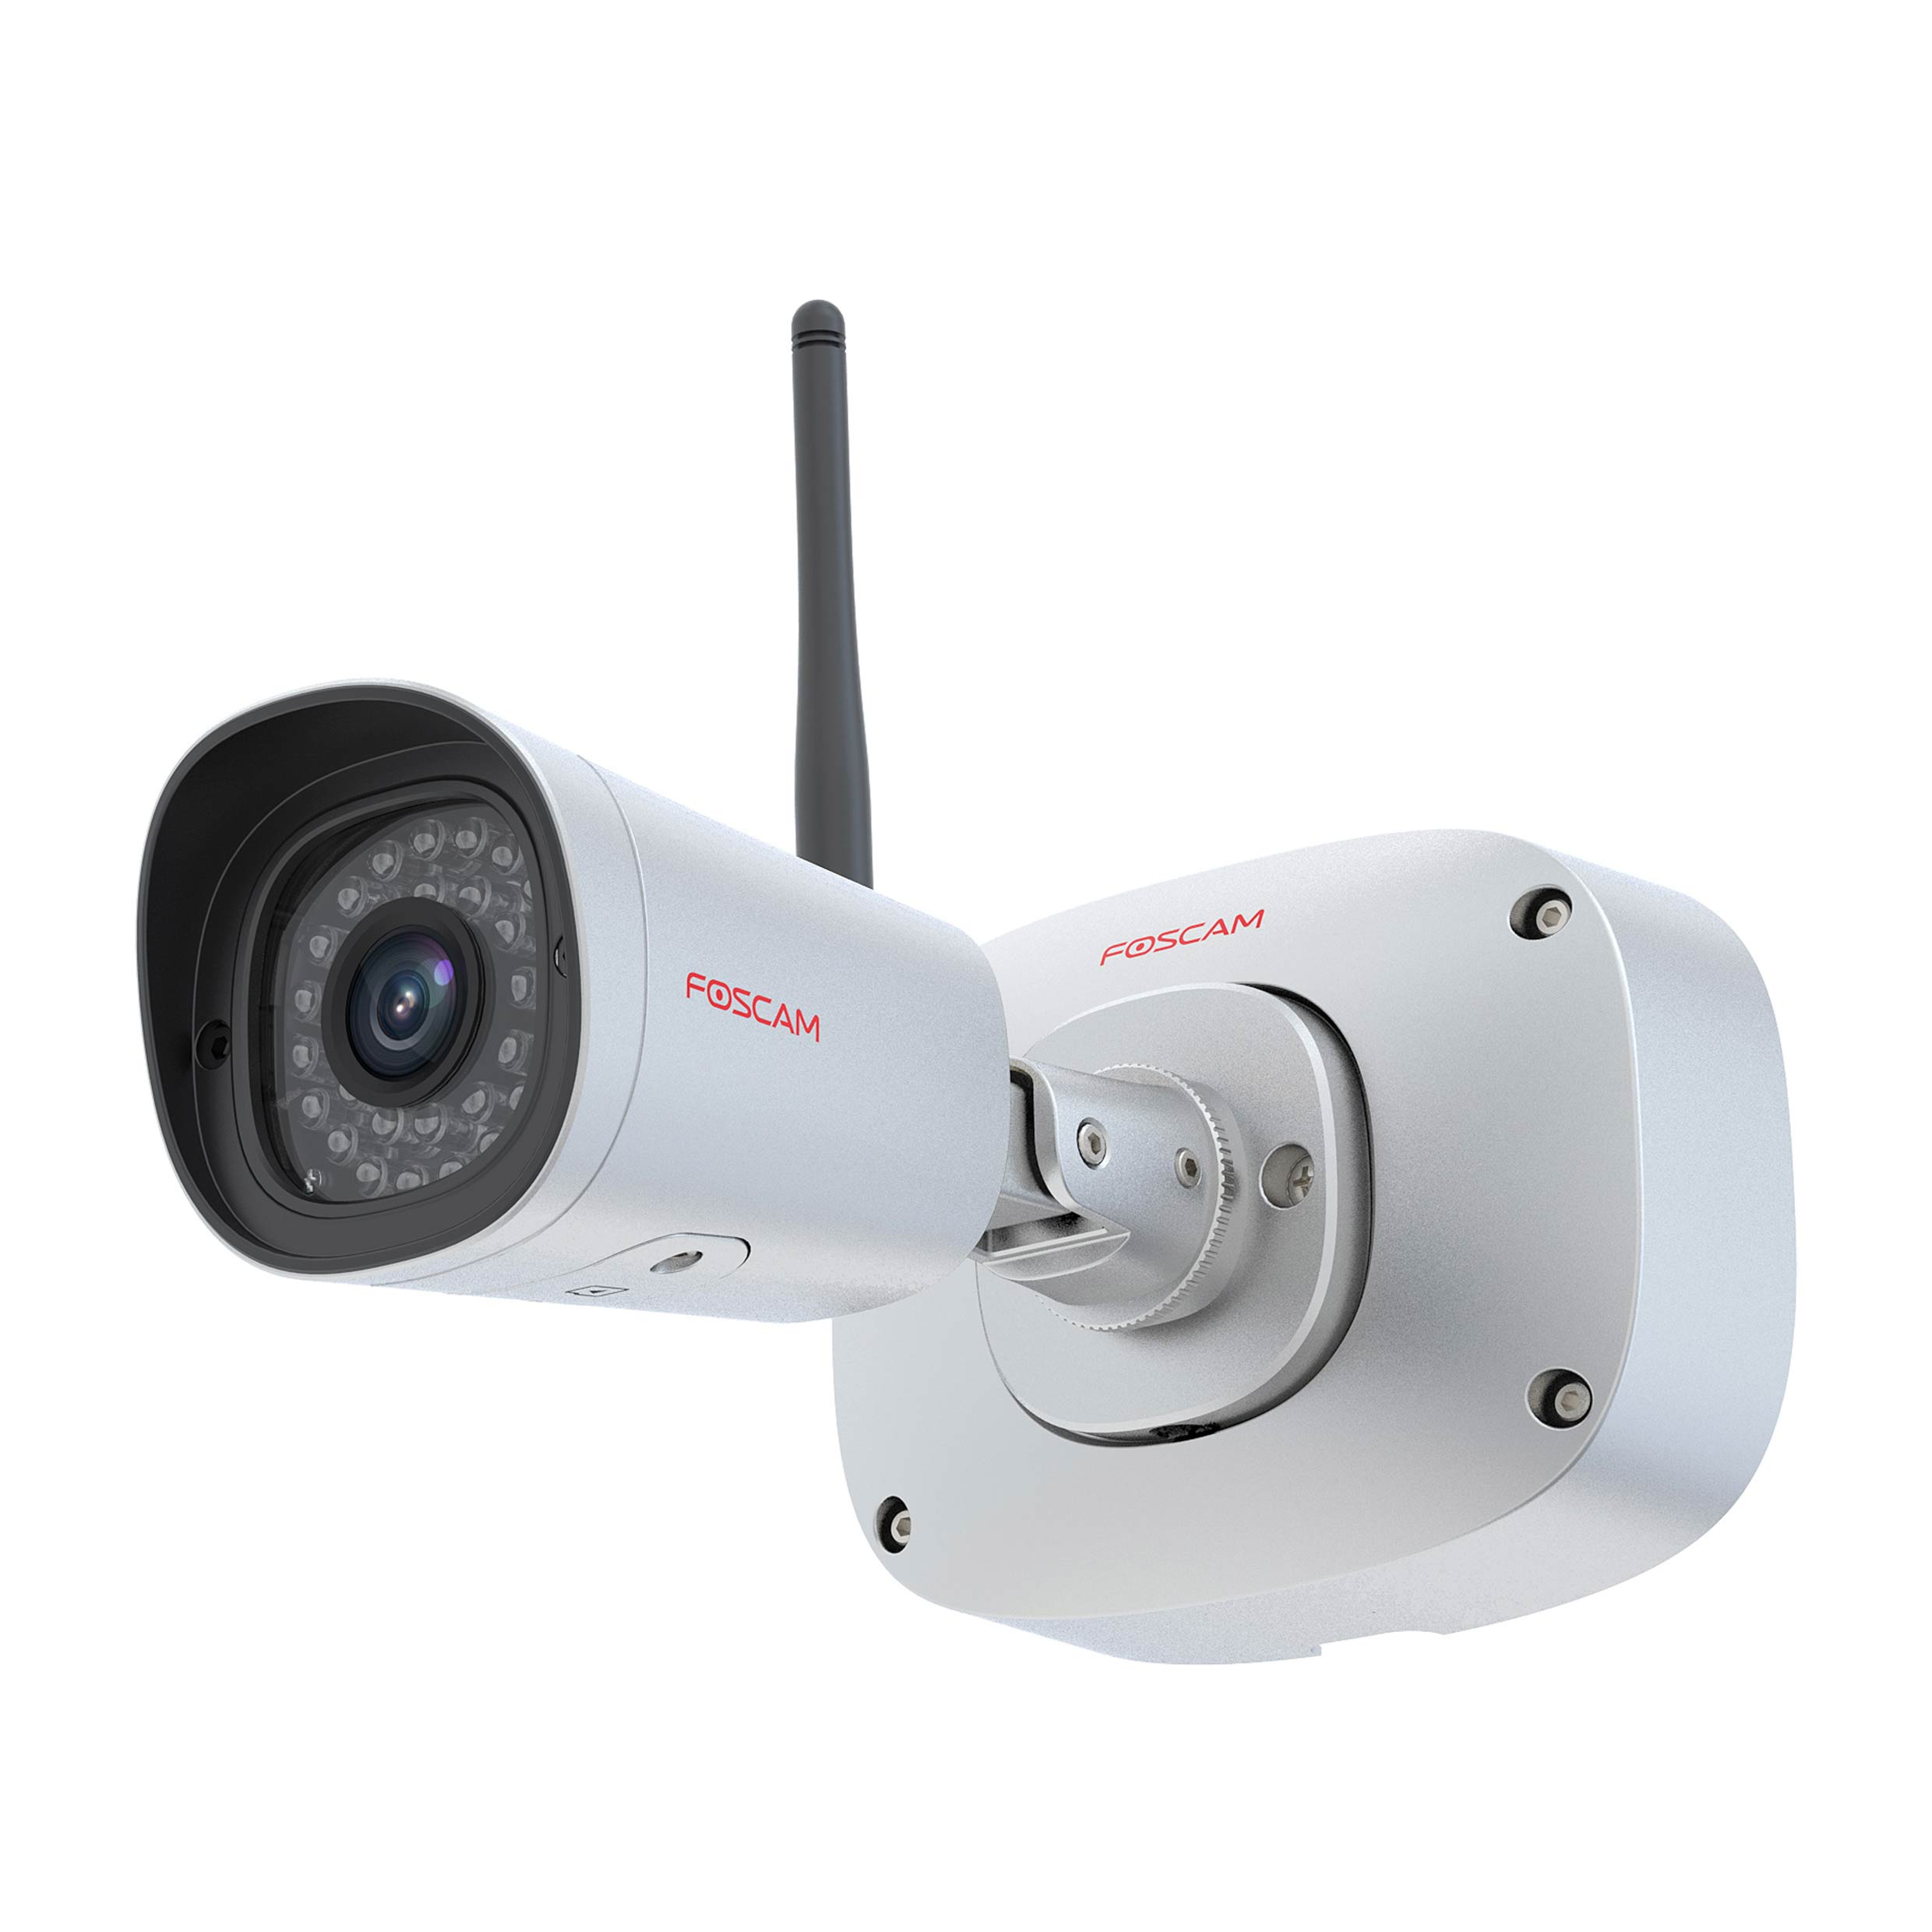 Überwachungskamera, FOSCAM Video: x 1920 Auflösung pixels FI9915B, 1080